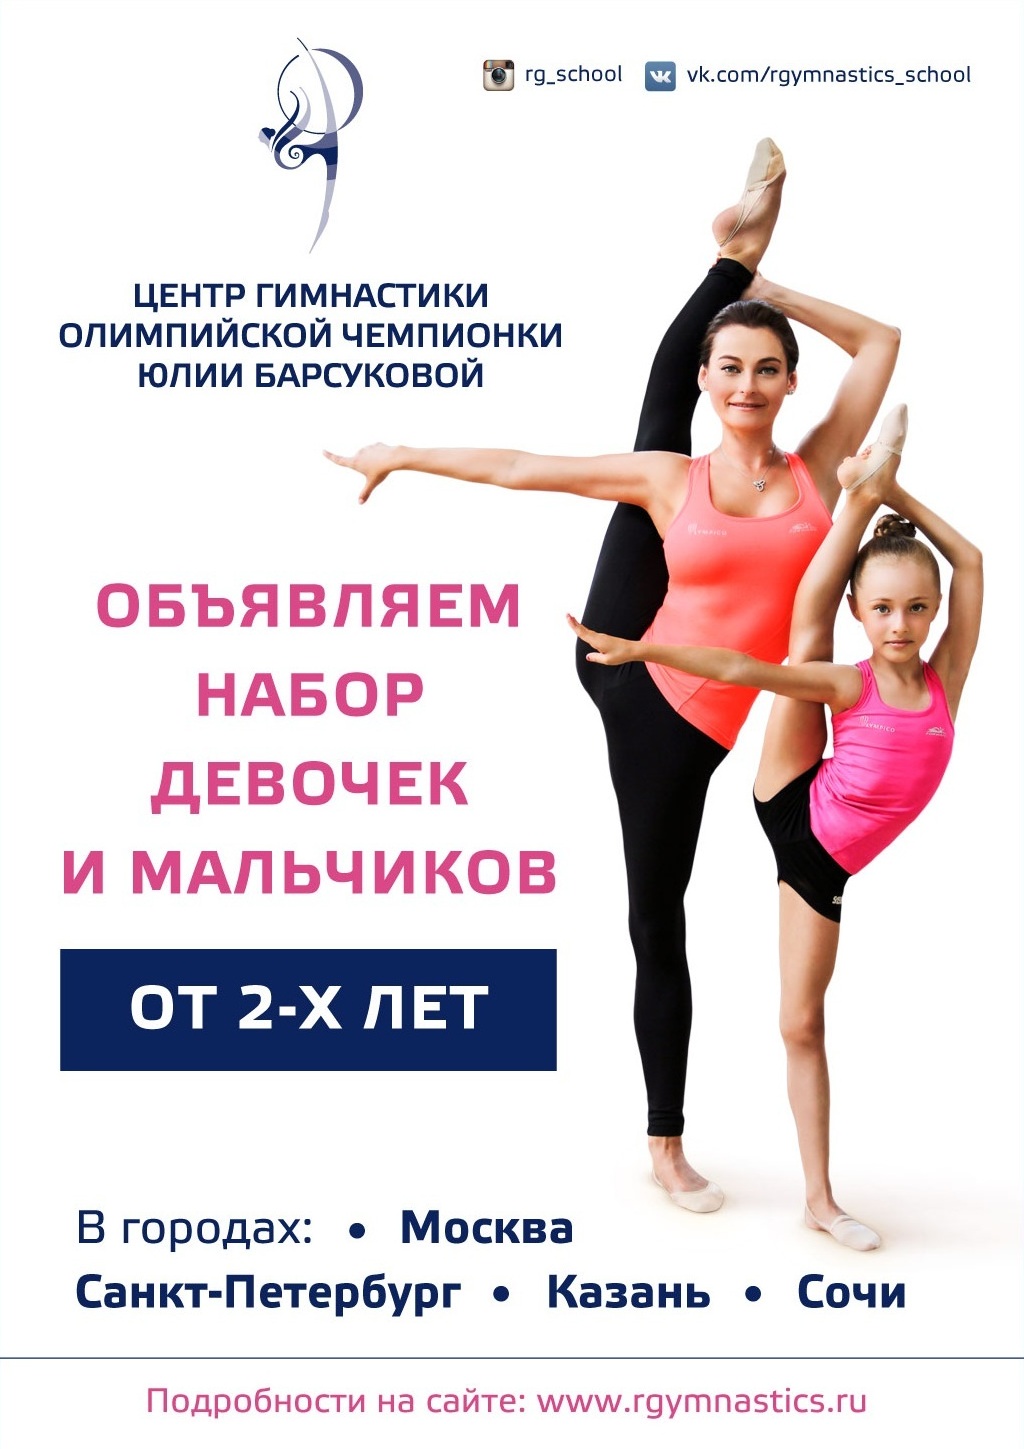 Интернет Магазин Художественной Гимнастики Санкт Петербурга